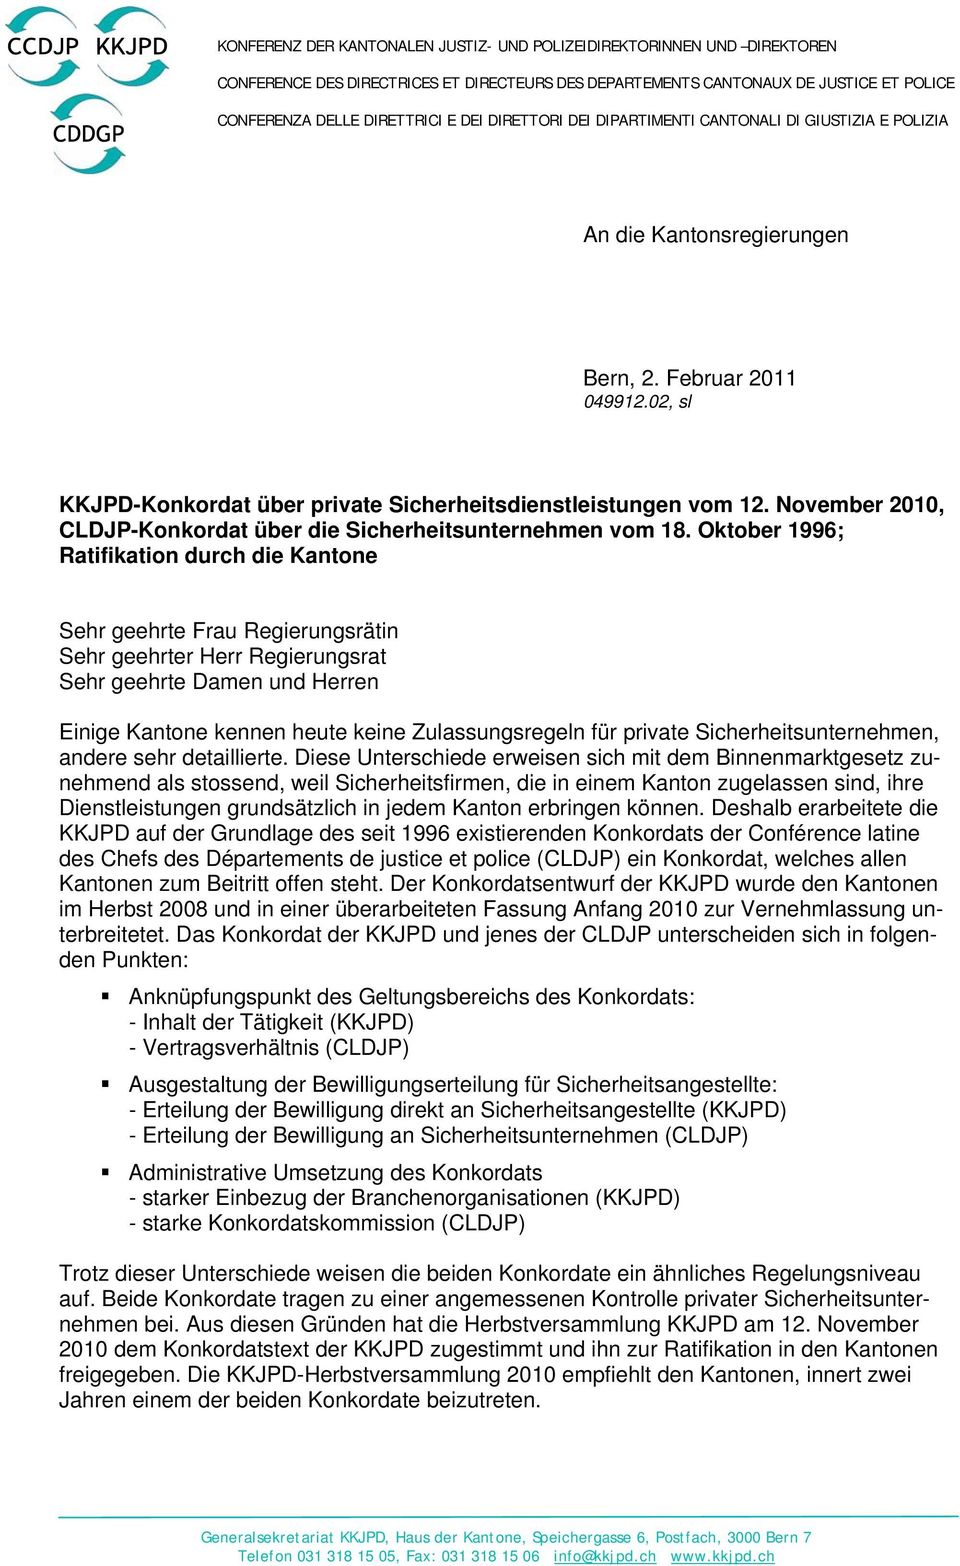 November 2010, CLDJP-Konkordat über die Sicherheitsunternehmen vom 18.